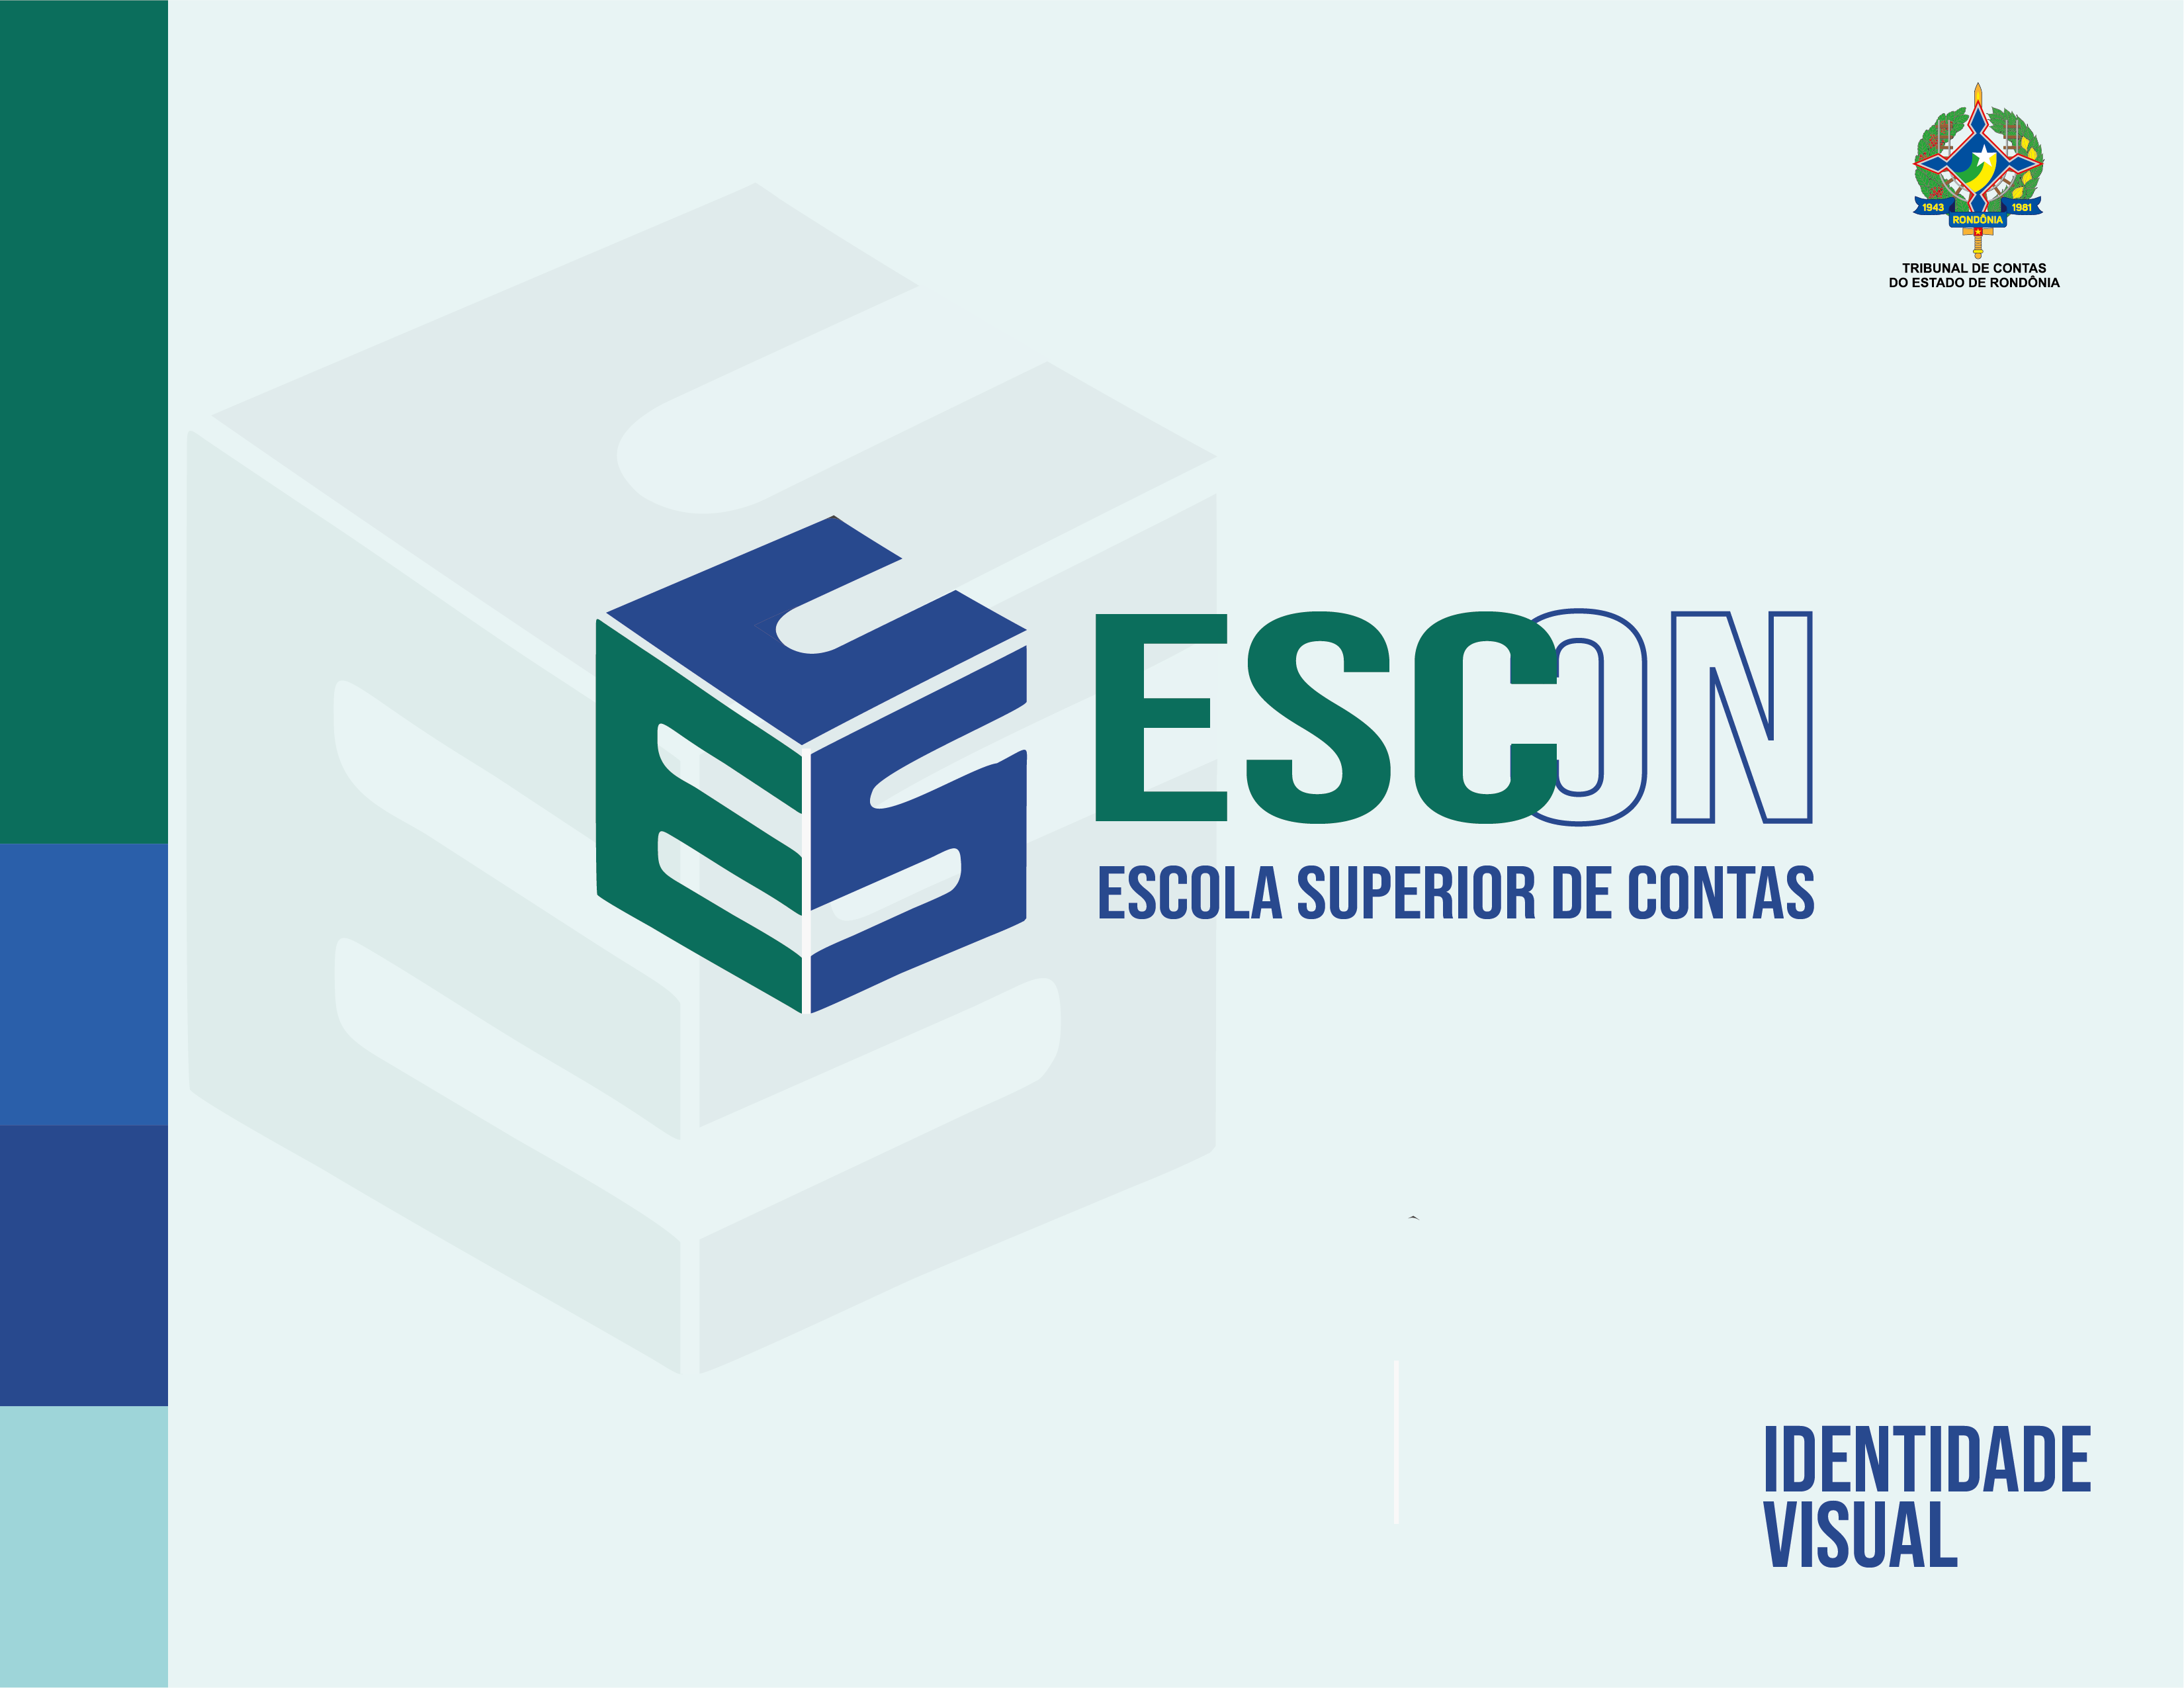 ESCON  Cursos Online Grátis Com Certificado